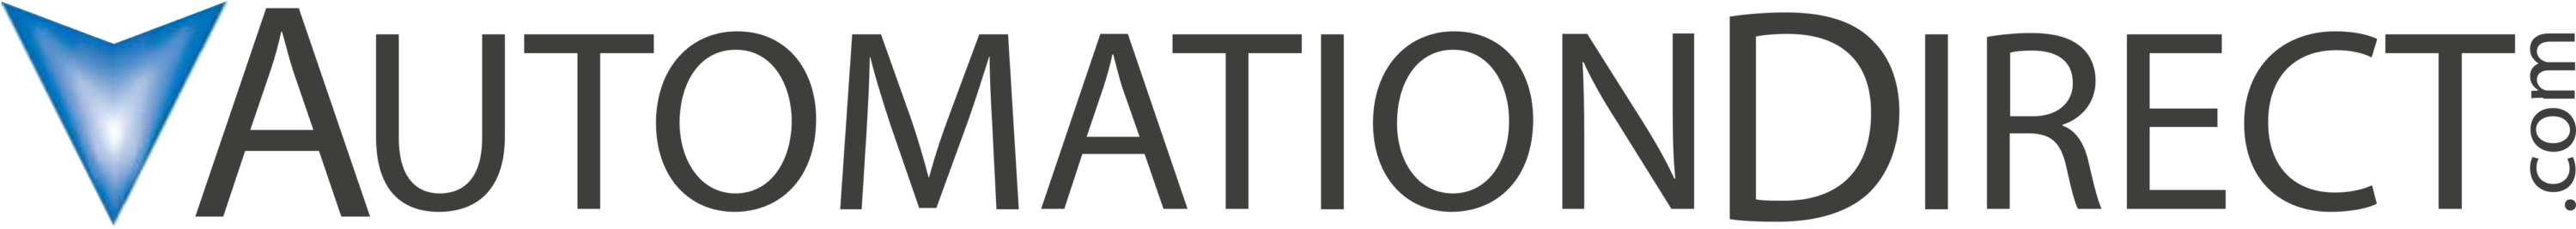 AutomationDirect Logo